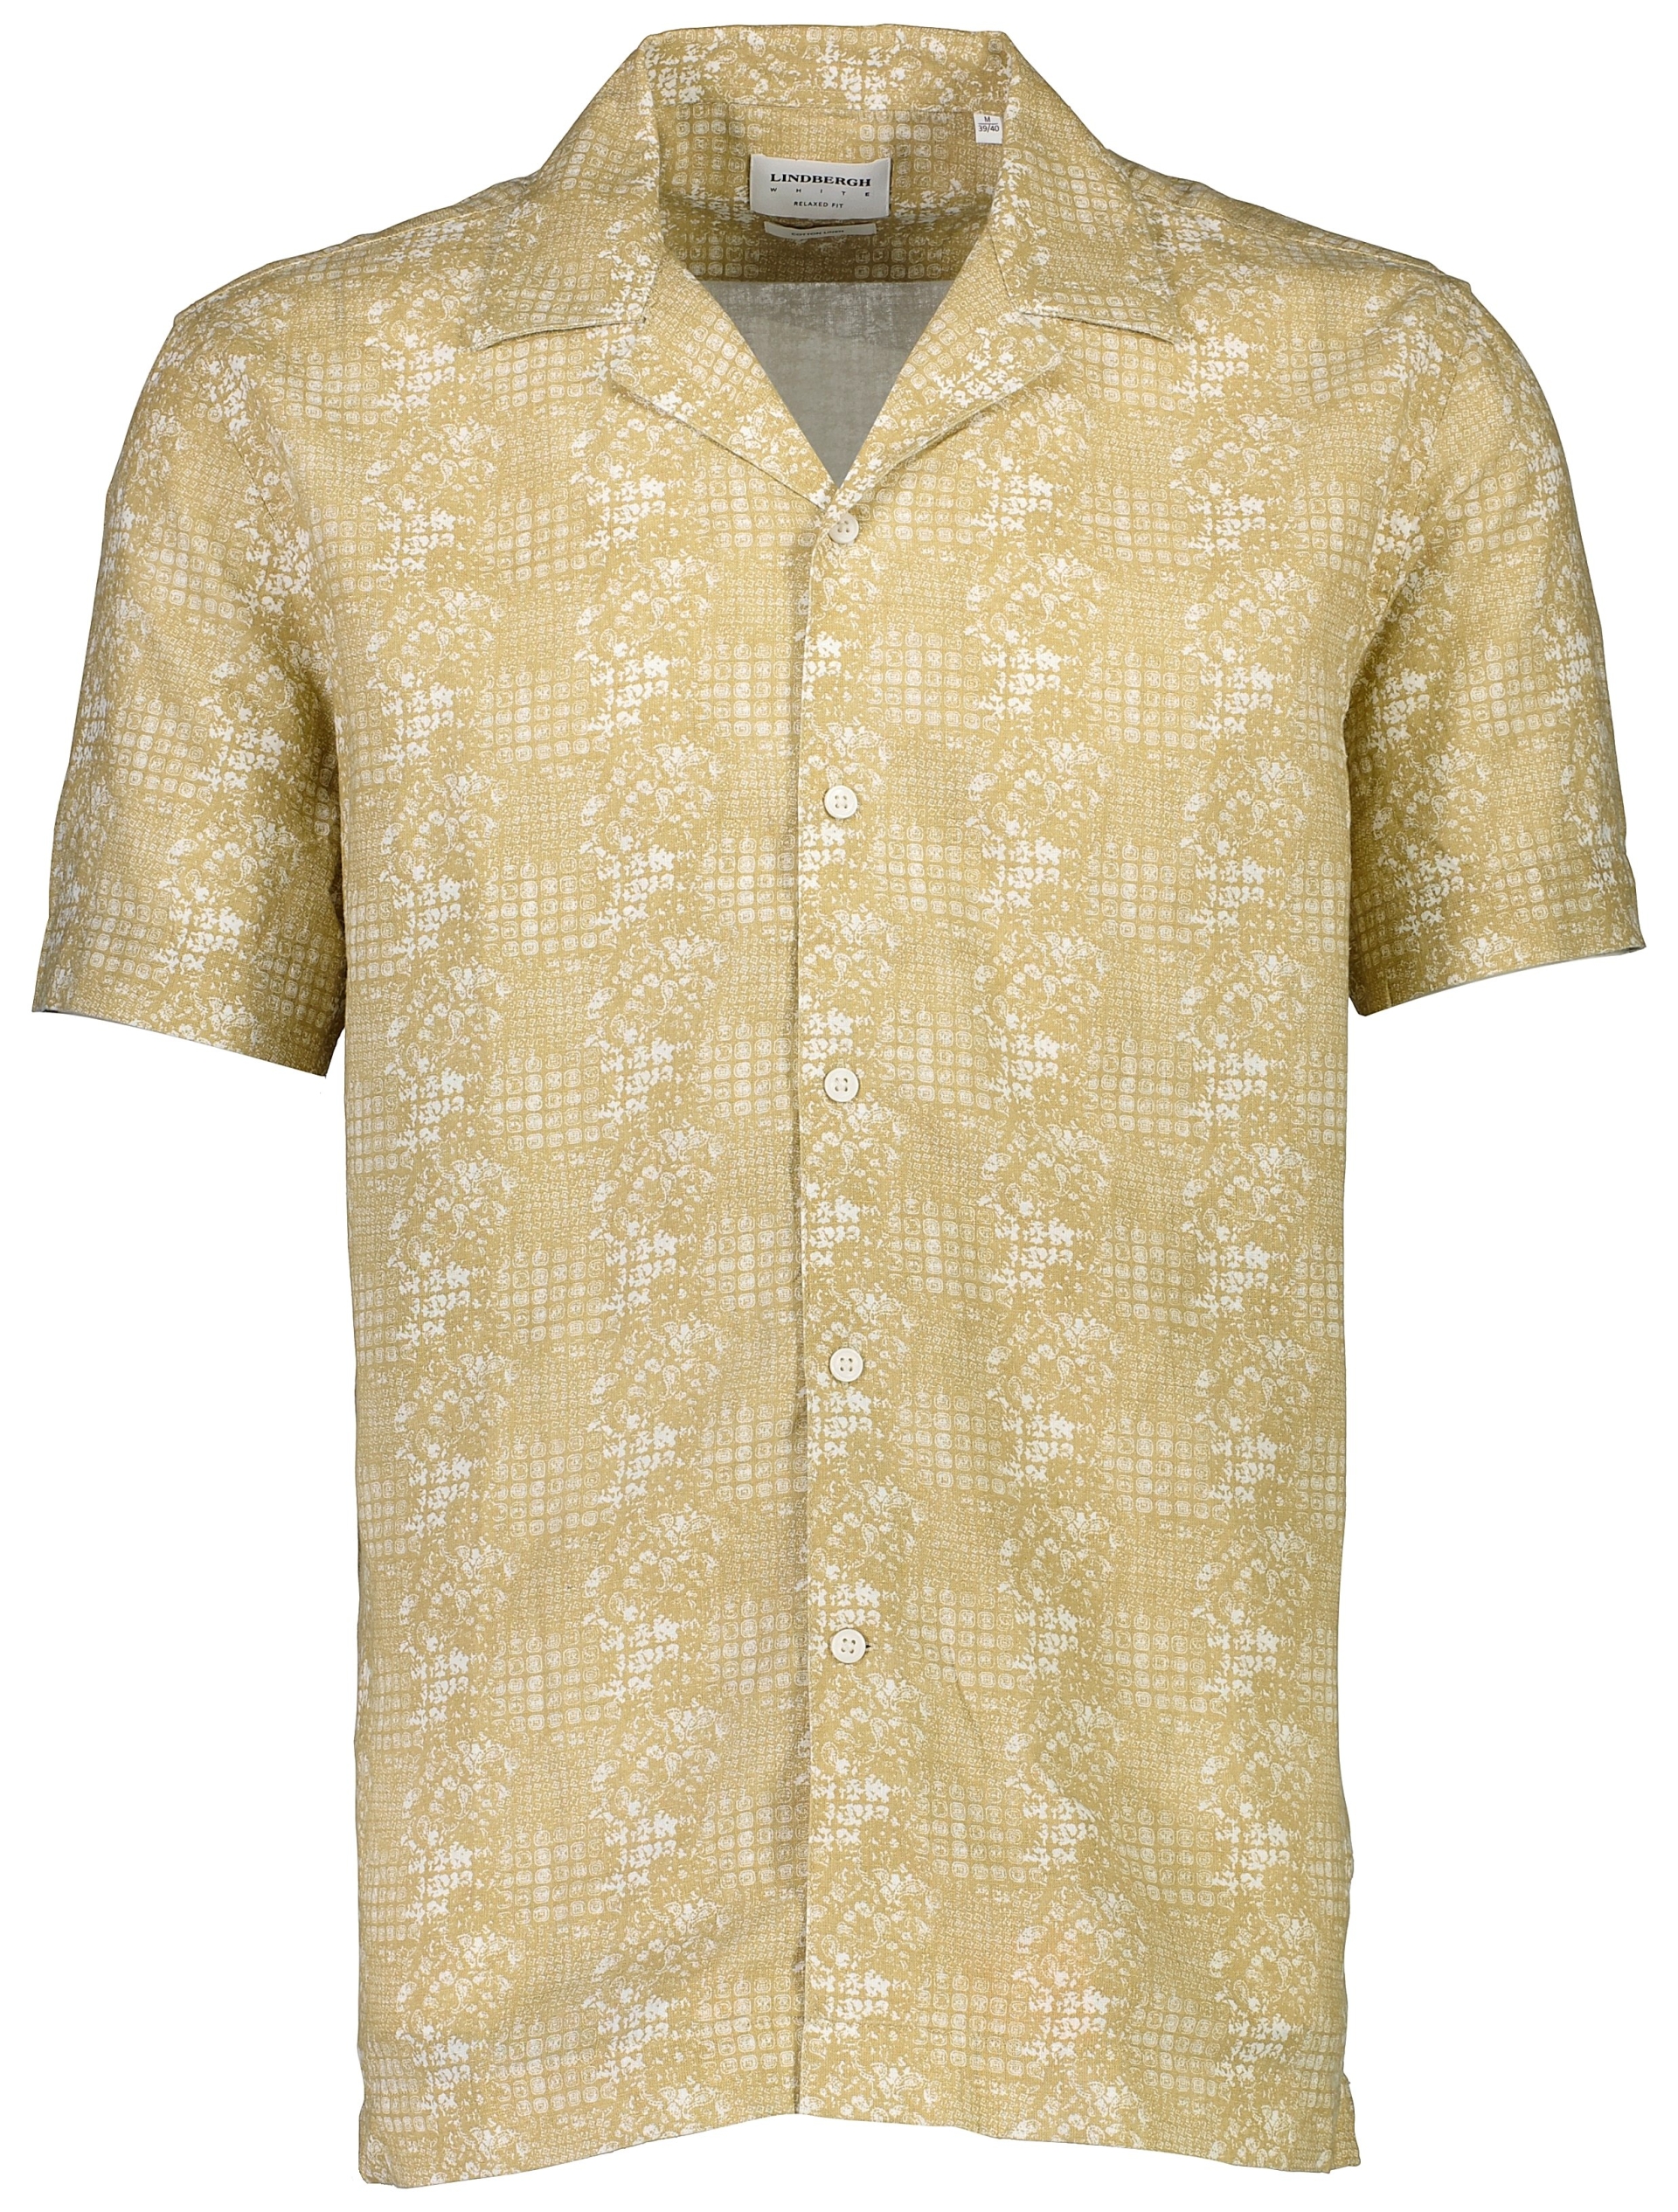 Lindbergh Linen shirt brown / camel